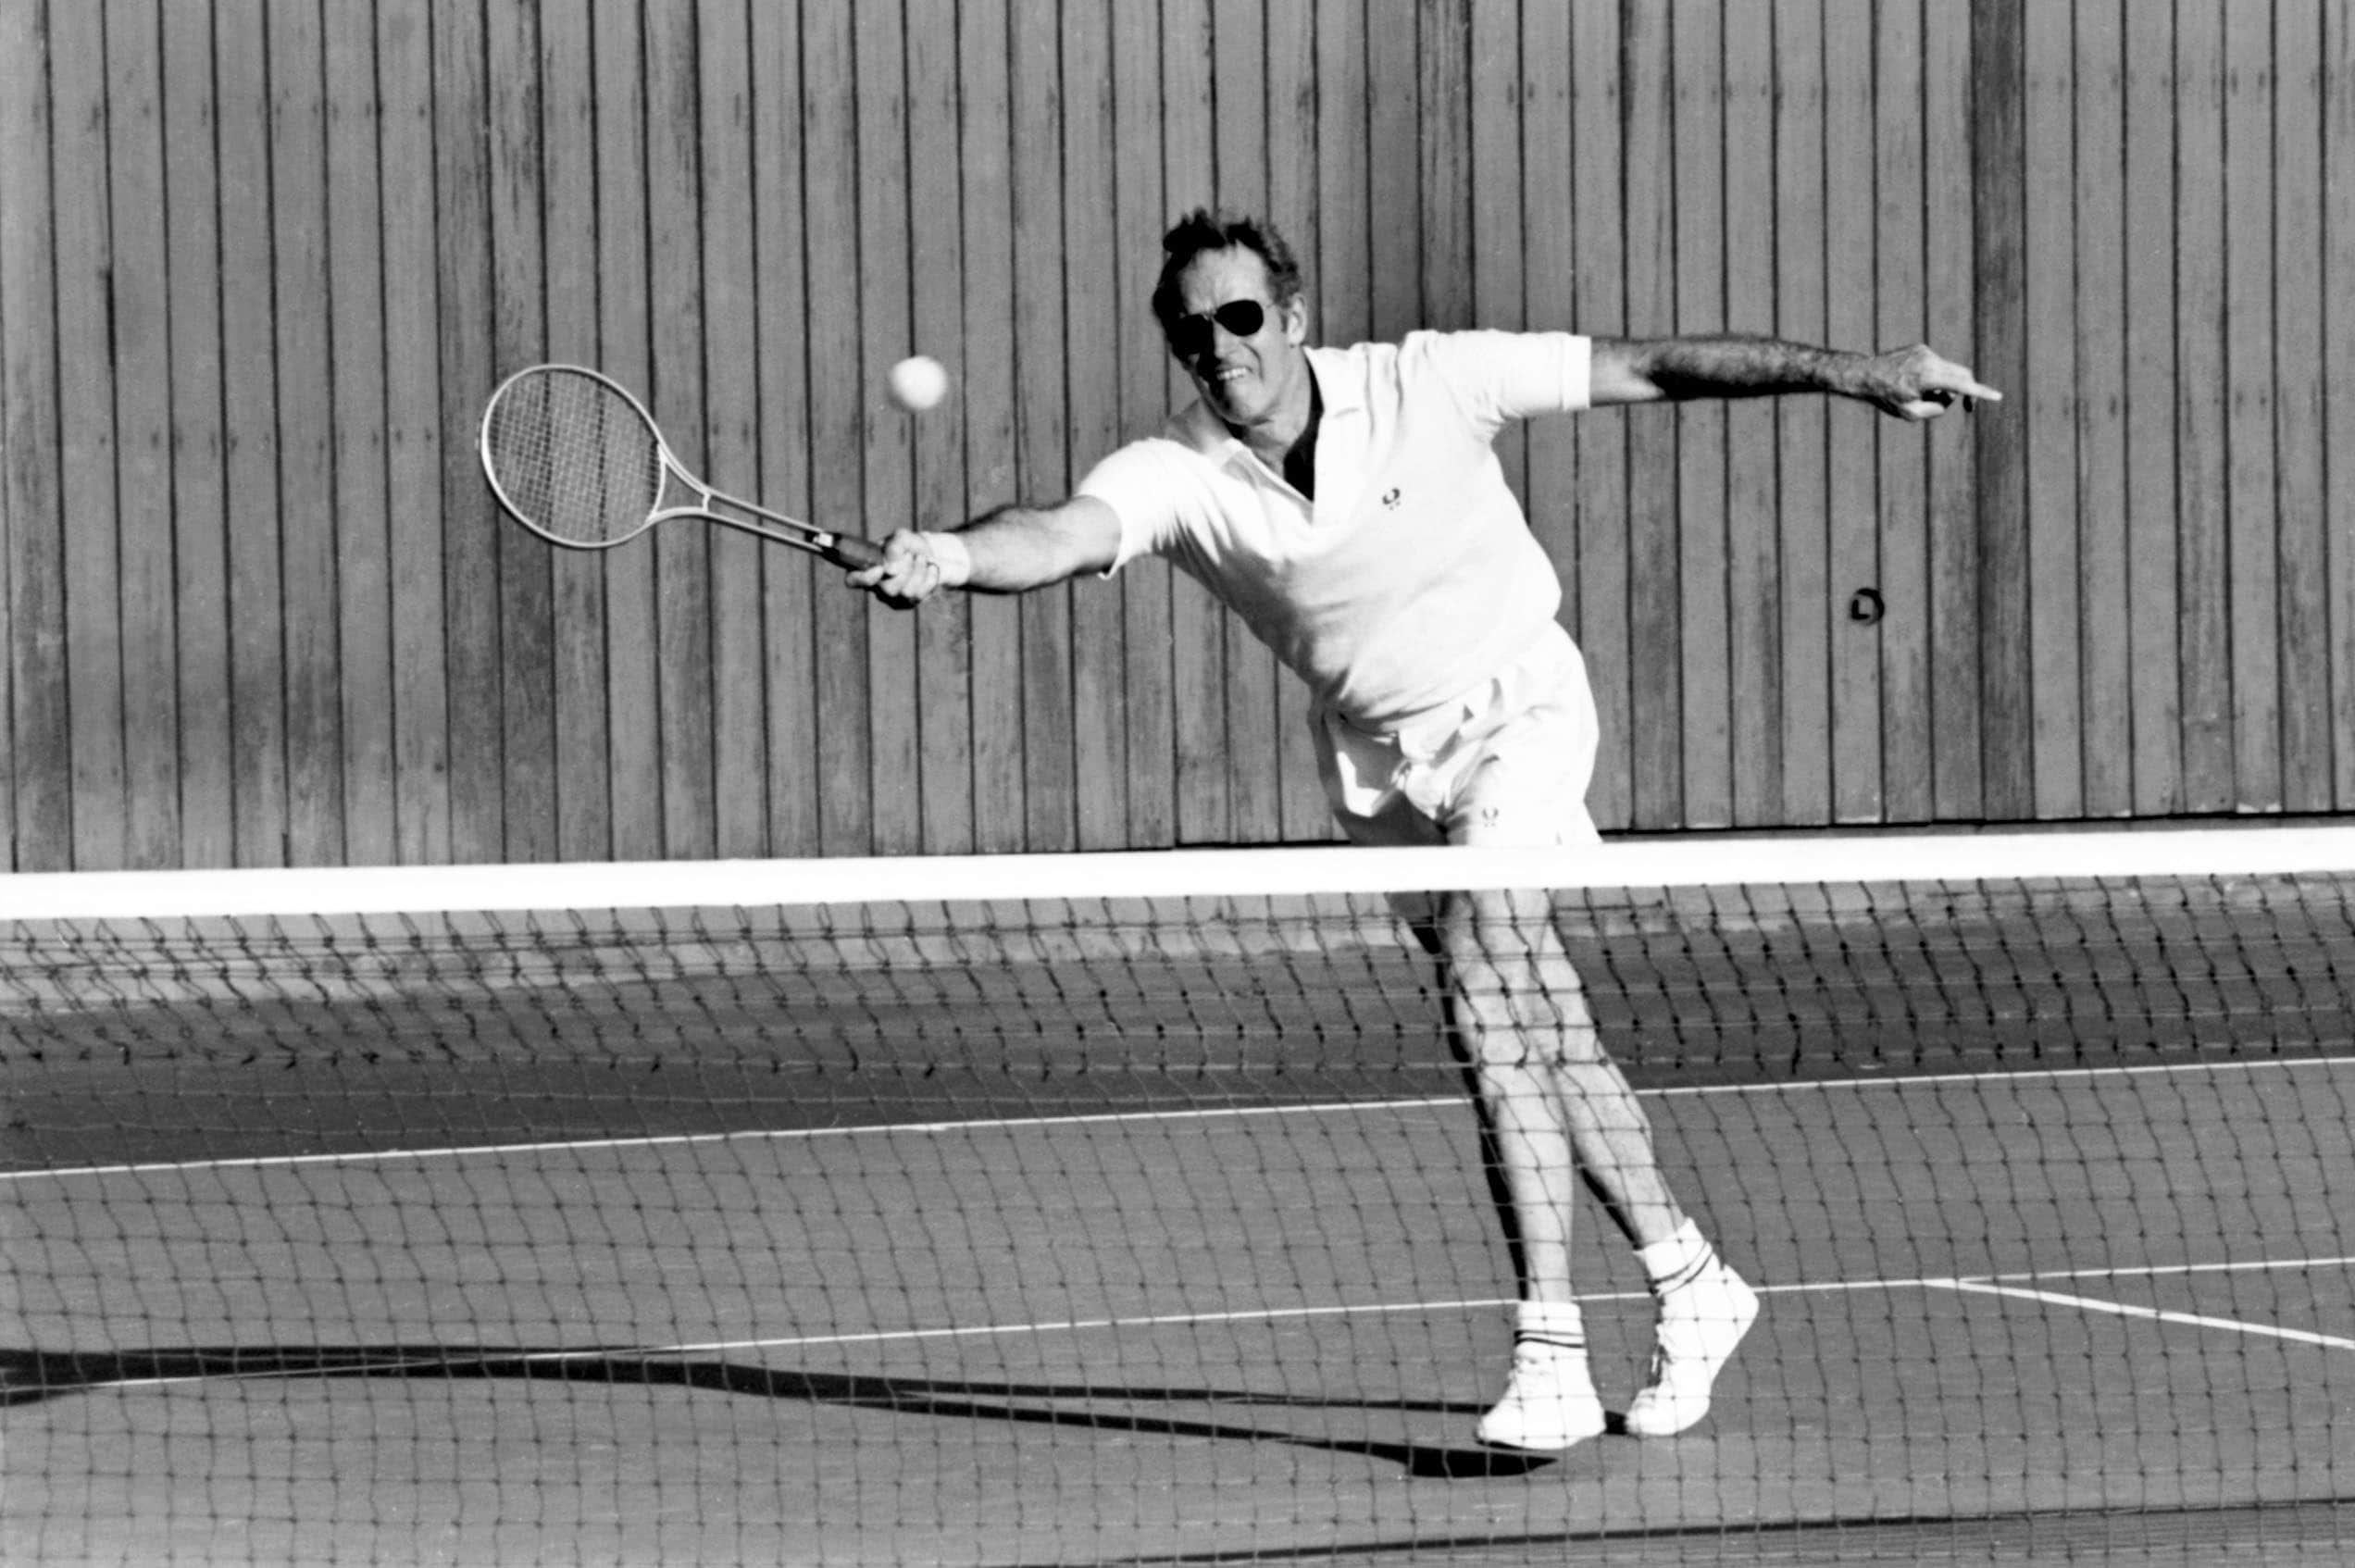 Anni 60. Heston gioca a tennis, uno dei suoi sport preferiti